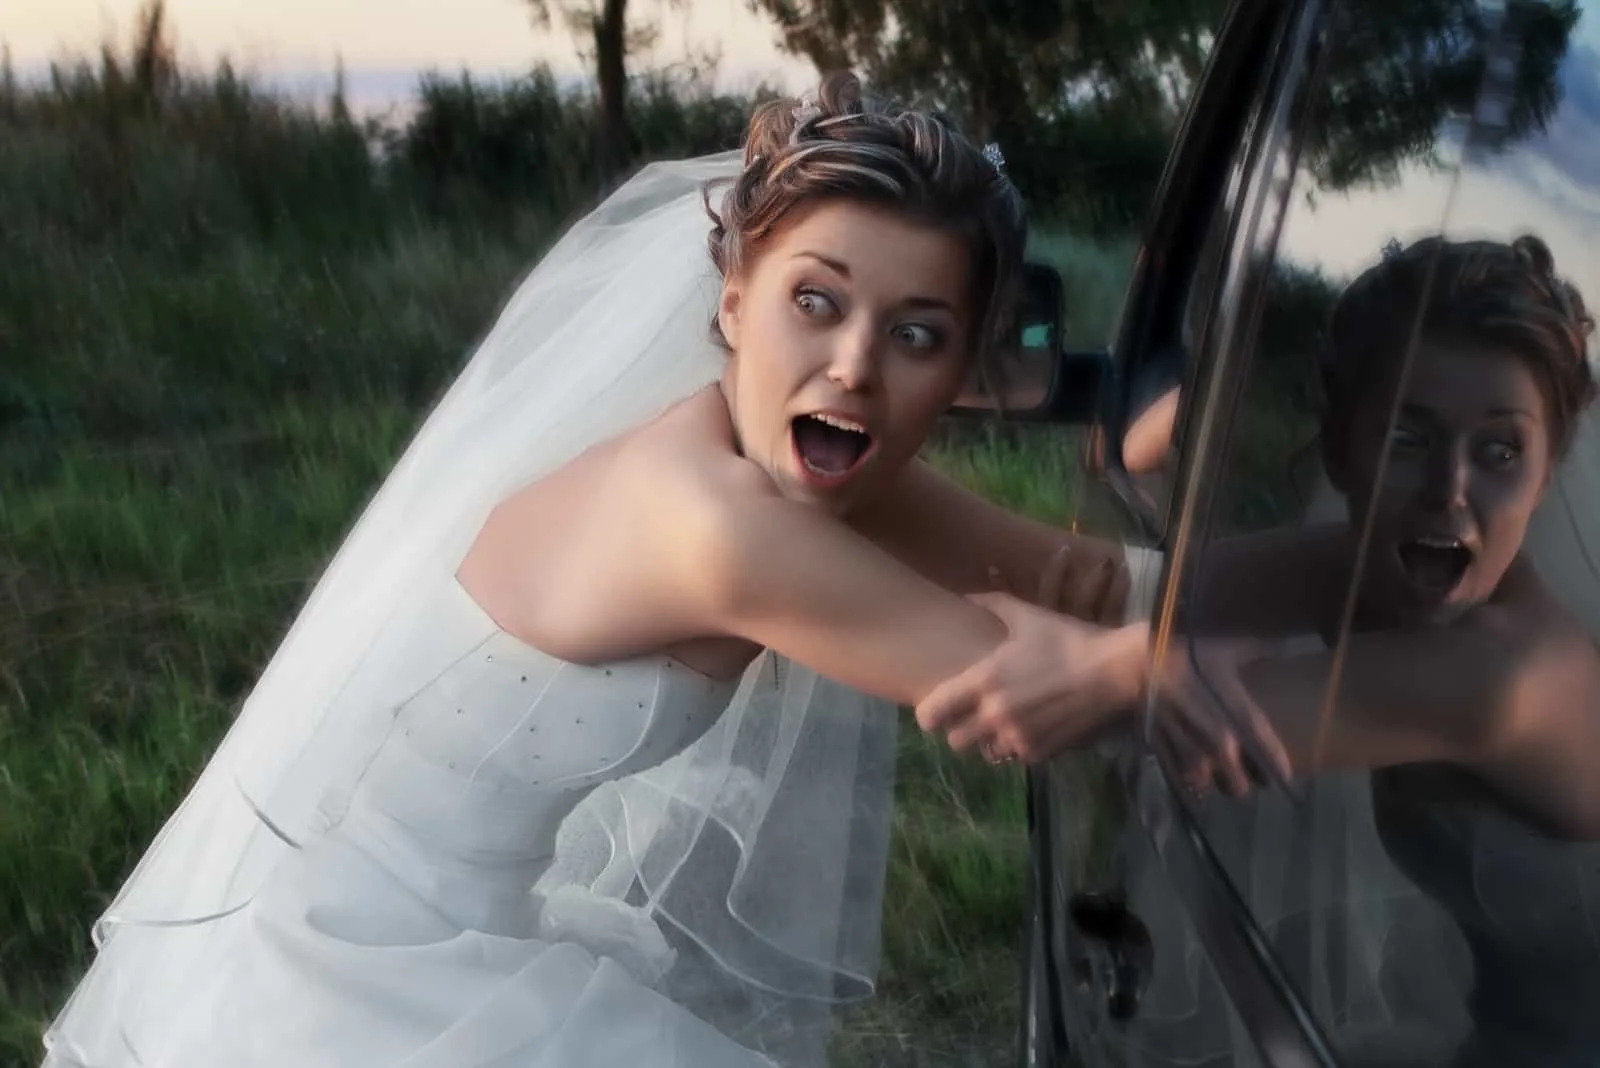 Erschrockene Braut im weißen Kleid, die abends in ein schwarzes Auto entführt wird